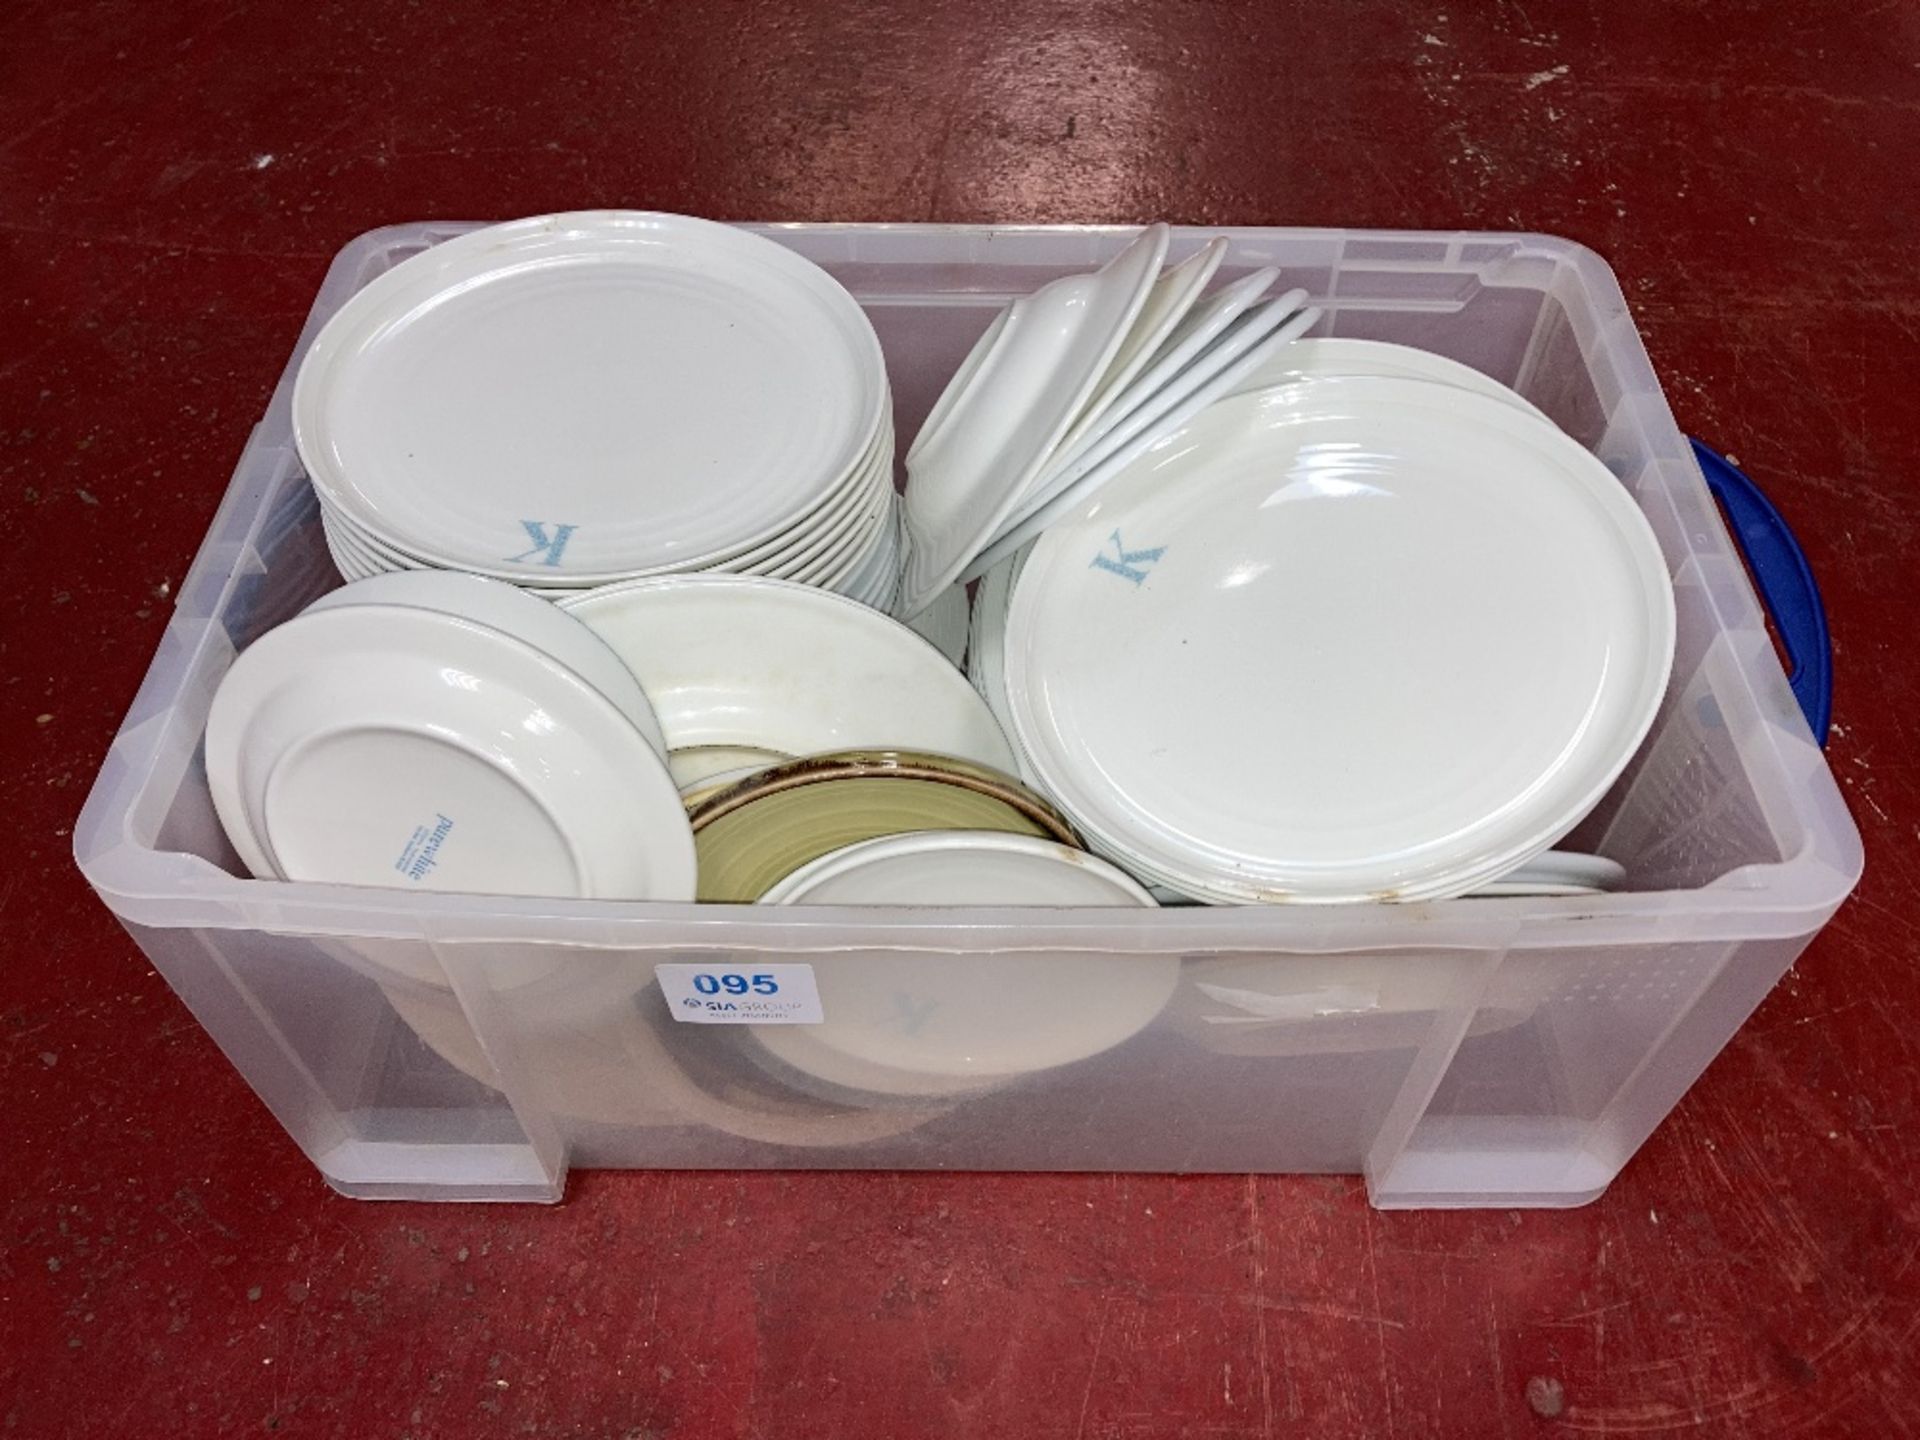 Quantity of Ceramic & Plastic Dishware c/w Plastic Storage Box